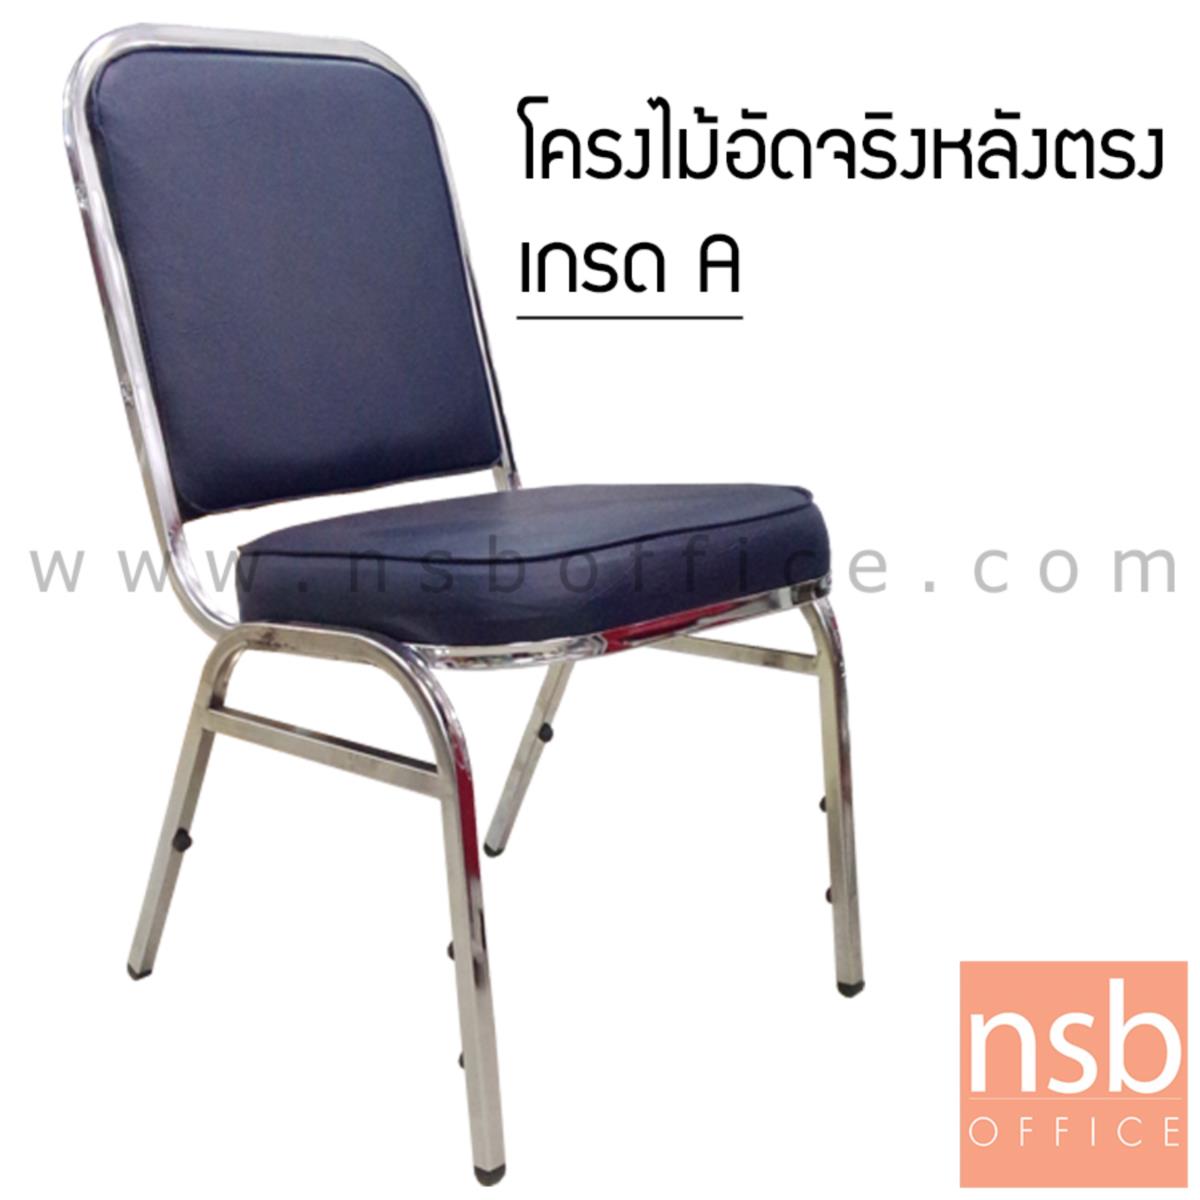 เก้าอี้อเนกประสงค์จัดเลี้ยง รุ่น Bravin (เบรวิน) ขนาด 88H cm. ขาเหล็ก 